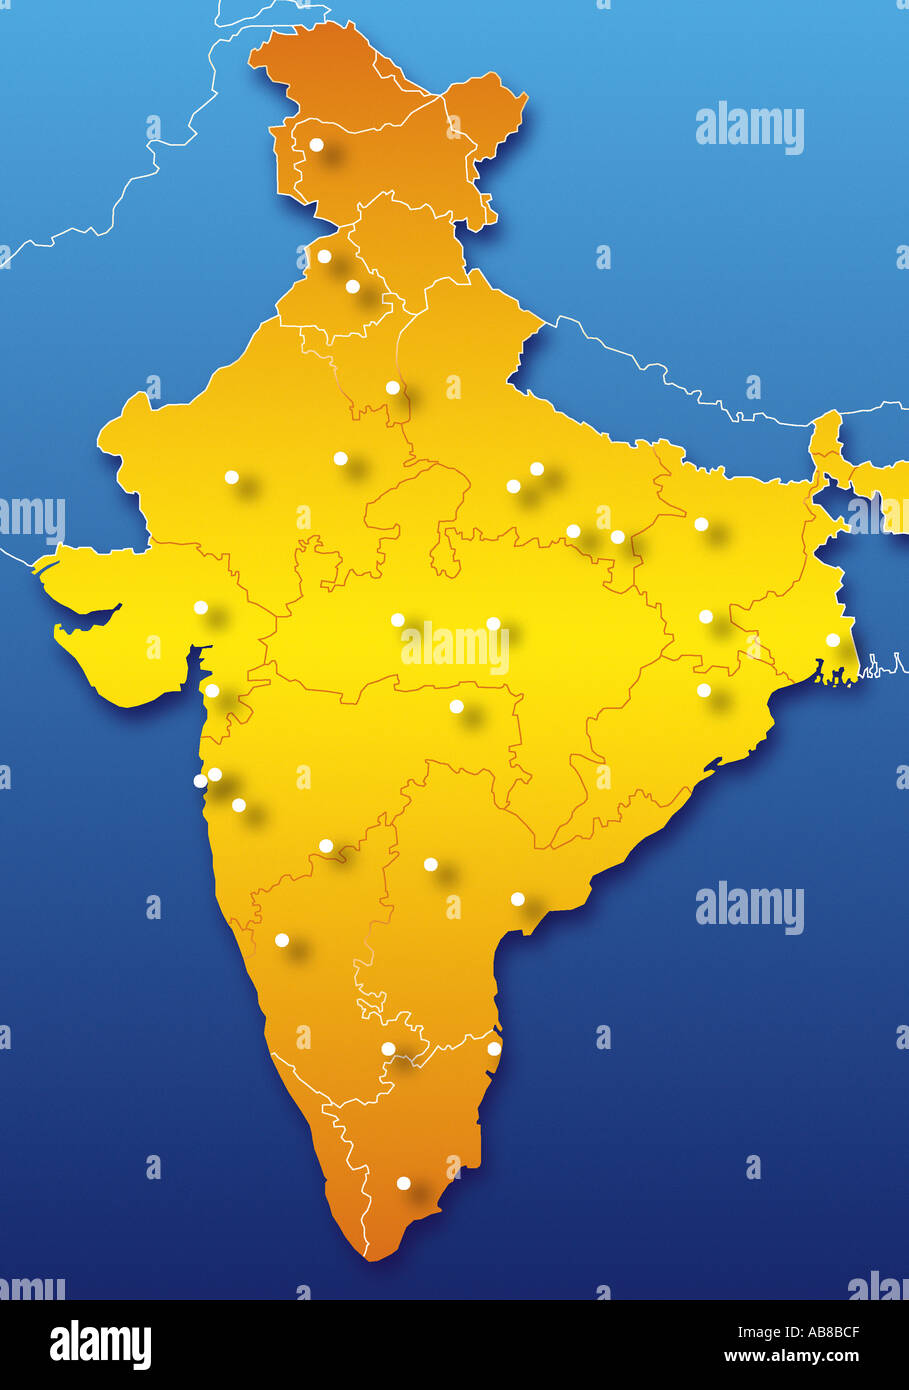 Landkarte von Indien Stockfoto